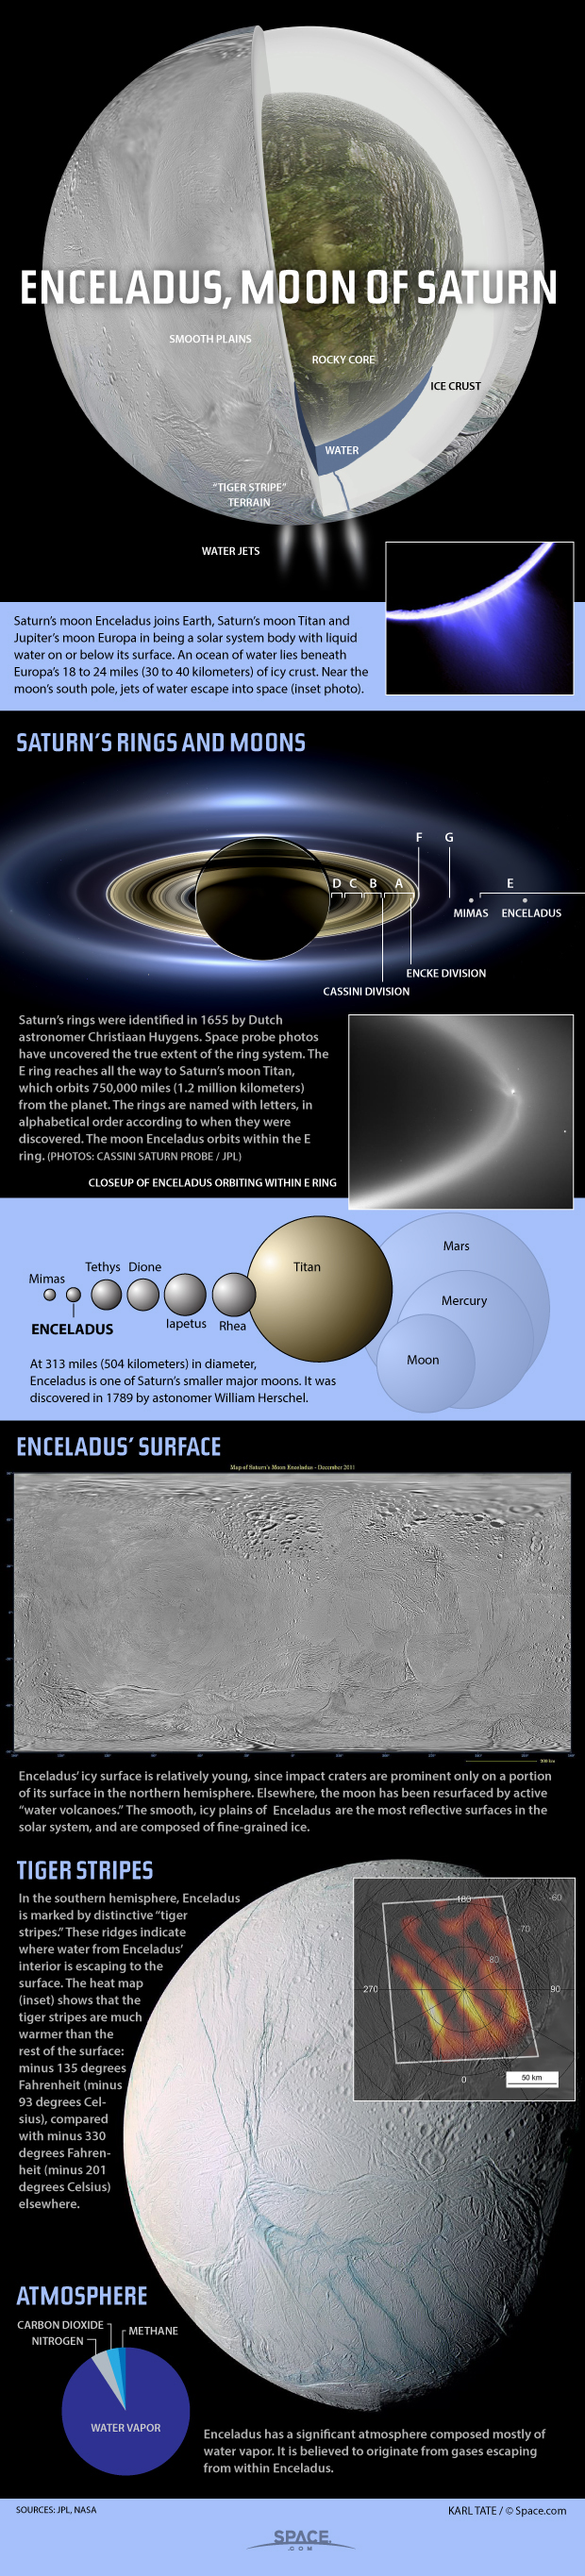 enceladus-moon-of-saturn-140409a-02